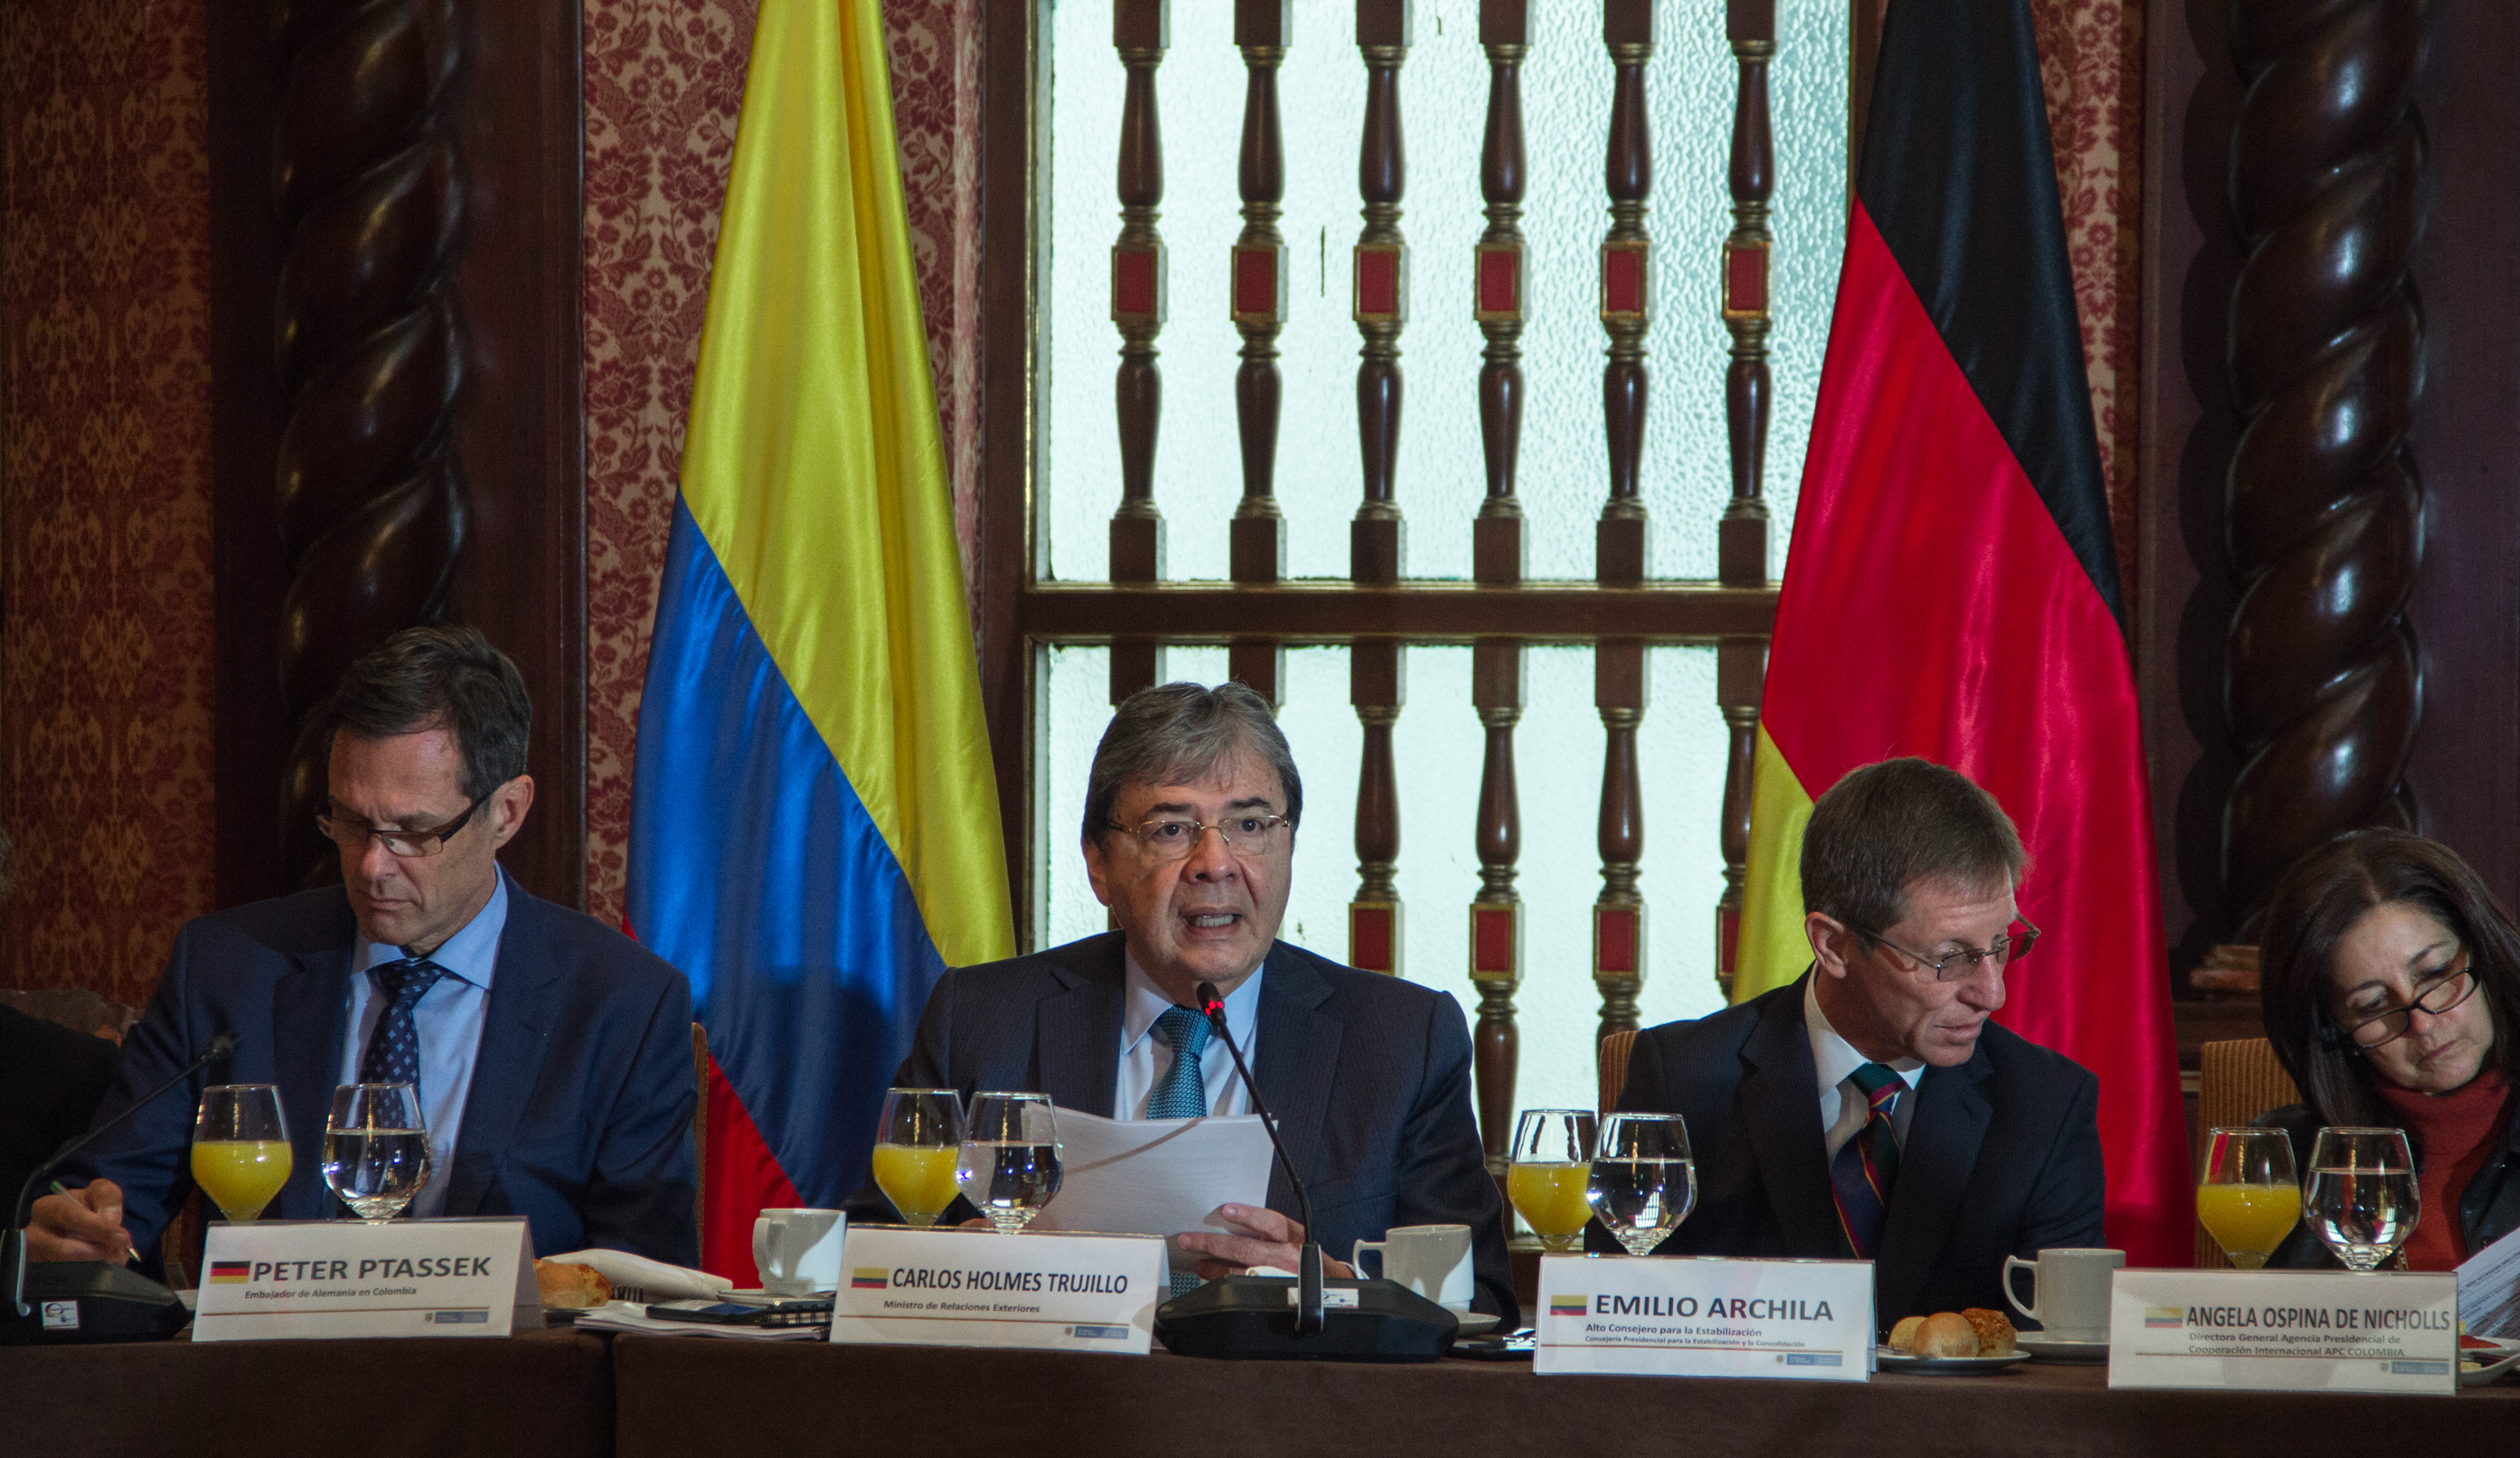 Canciller Carlos Holmes Trujillo participó en reunión del Grupo de Cooperantes con el fin de coordinar la cooperación internacional en el departamento de Norte de Santander